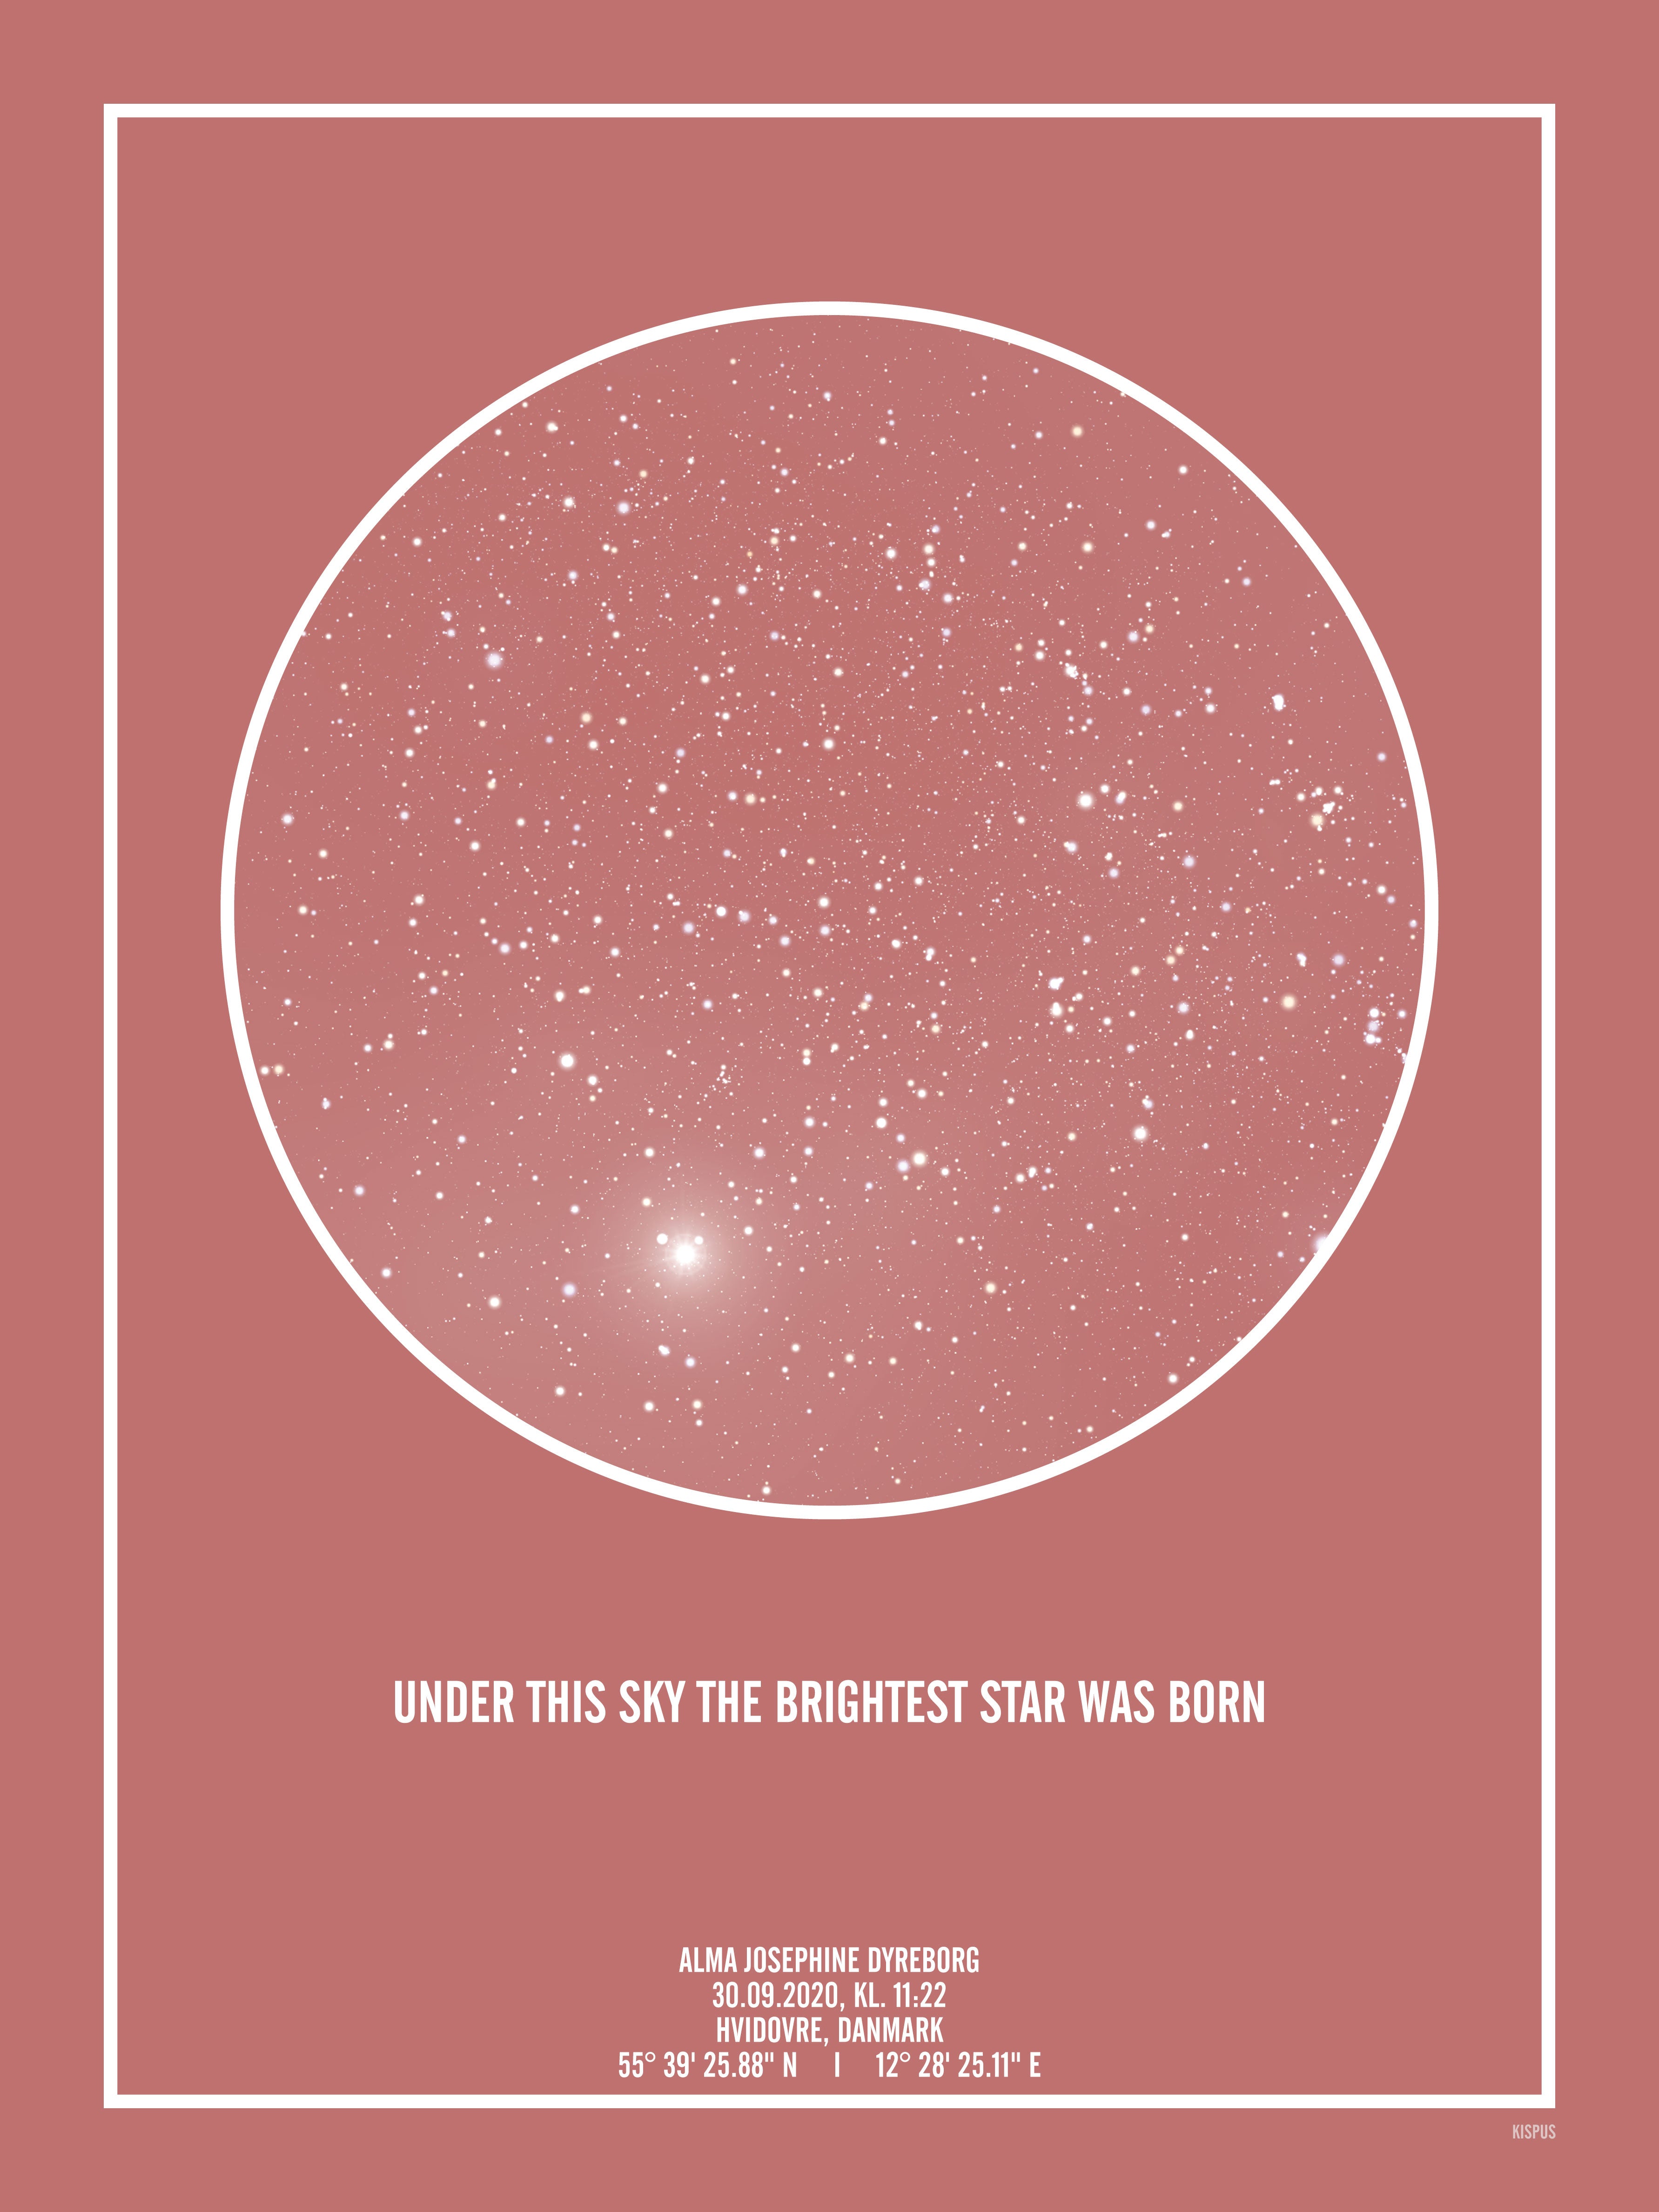 Se PERSONLIG STJERNEHIMMEL PLAKAT (BLUSH) - A4 / Hvid tekst + blush-farvet stjernehimmel / Klar stjernehimmel hos KISPUS